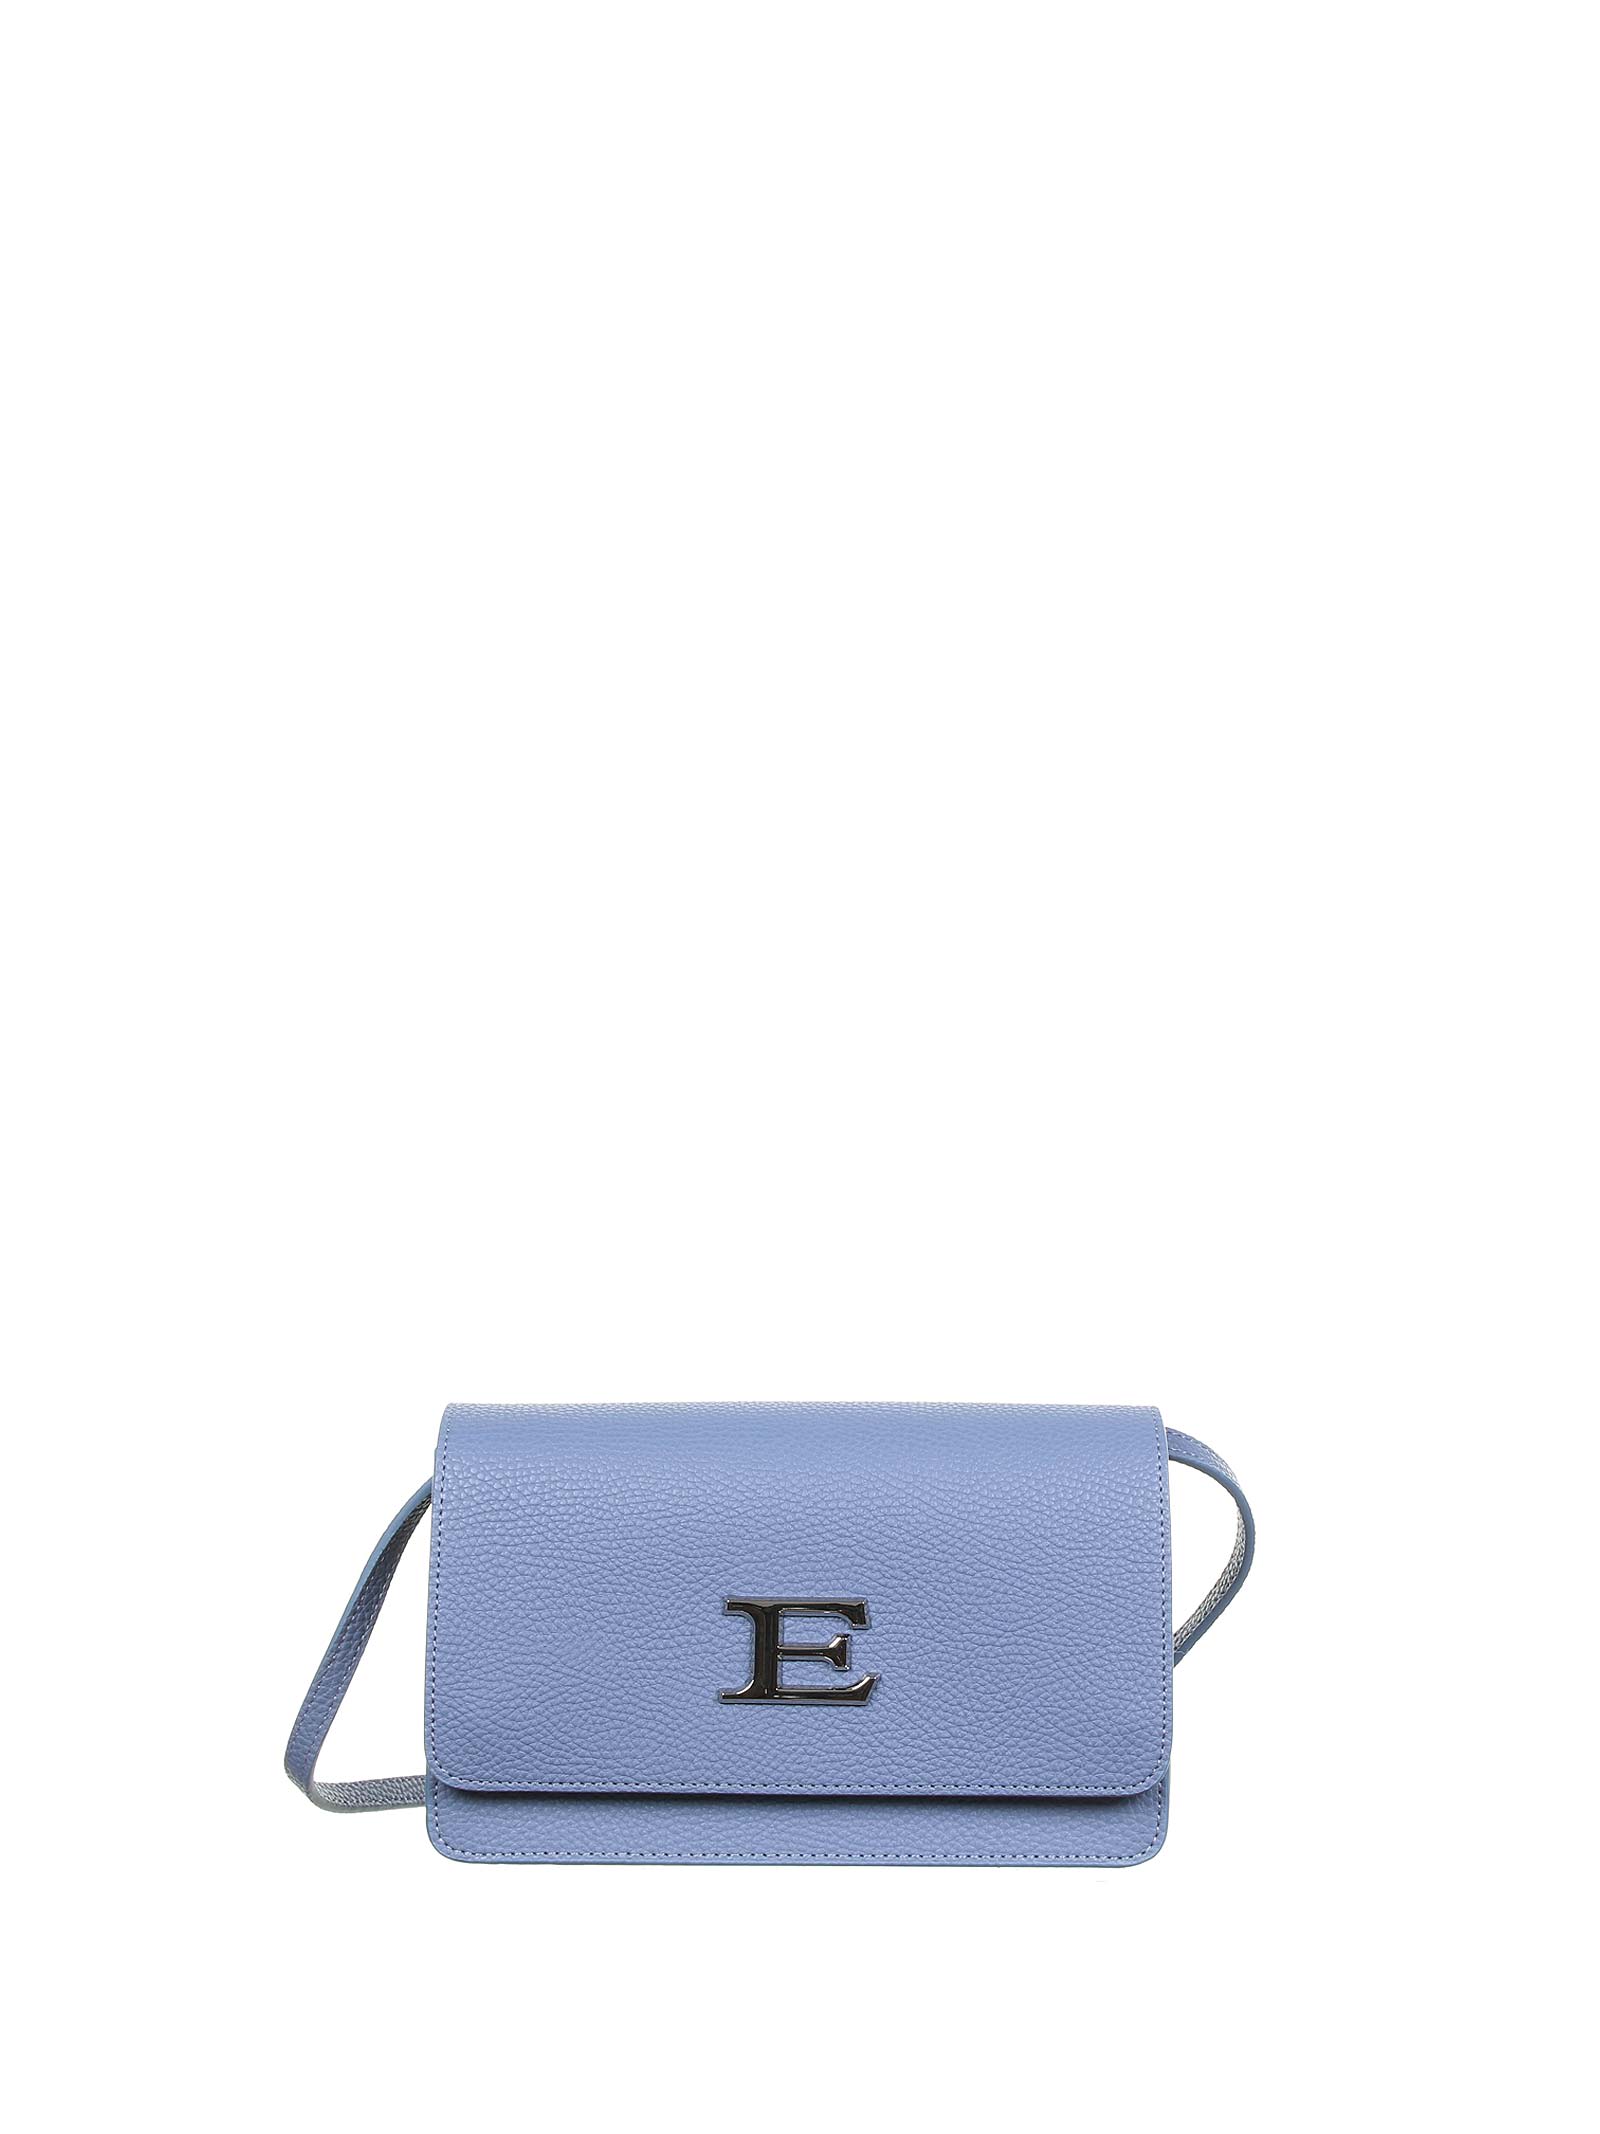 Ermanno Scervino Eba Light Blue Shoulder Bag In Azzurro